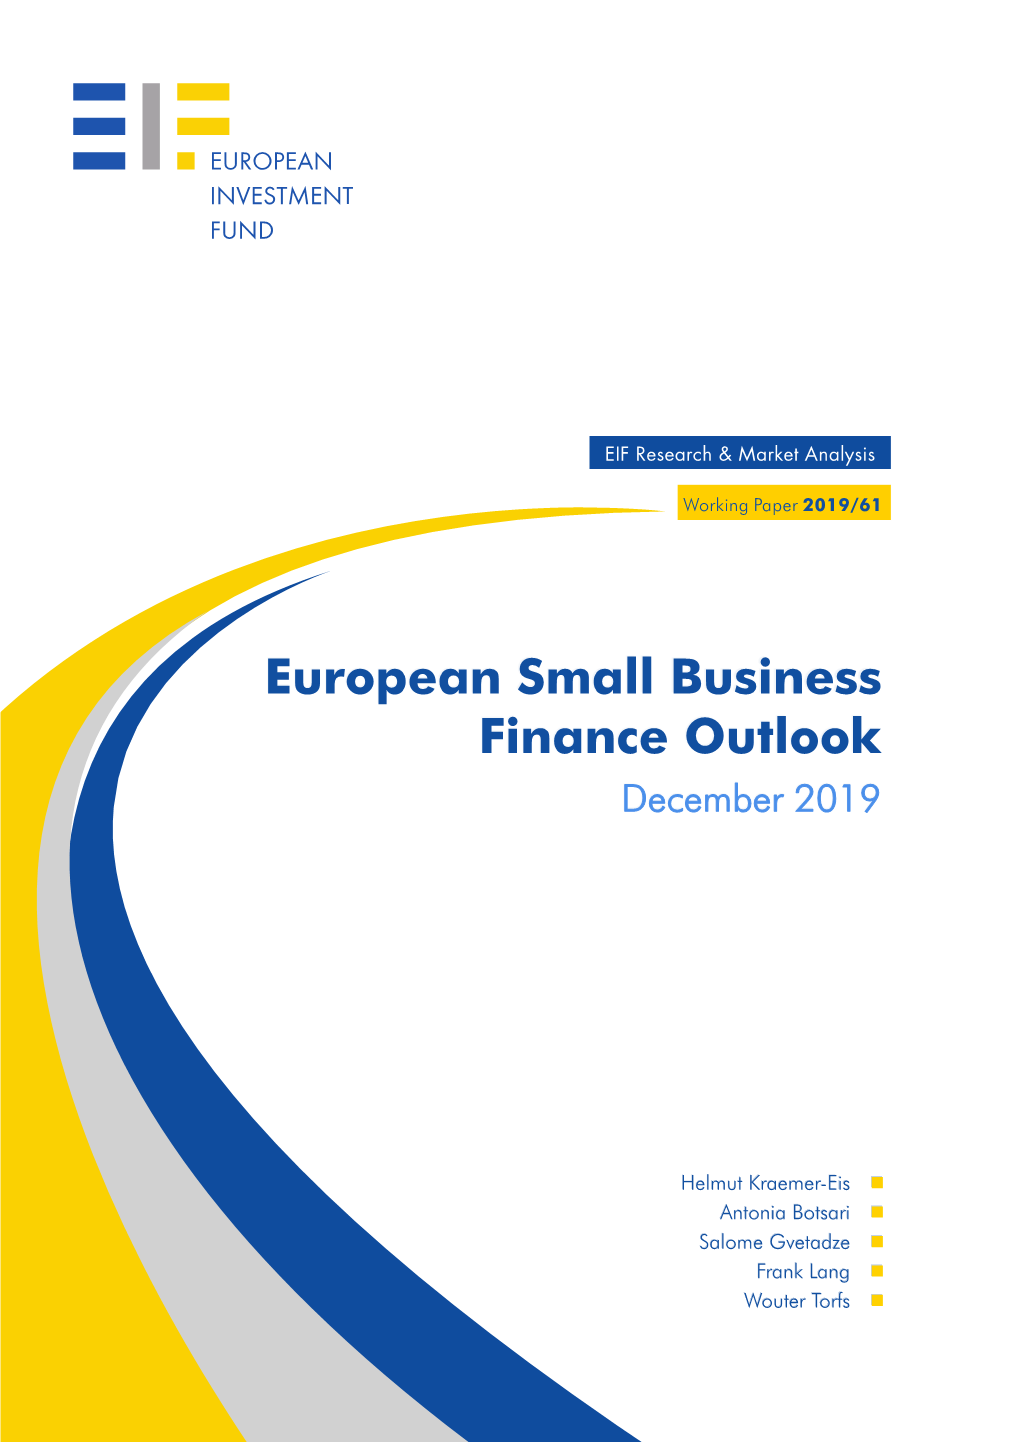 European Small Business Finance Outlook December 2019